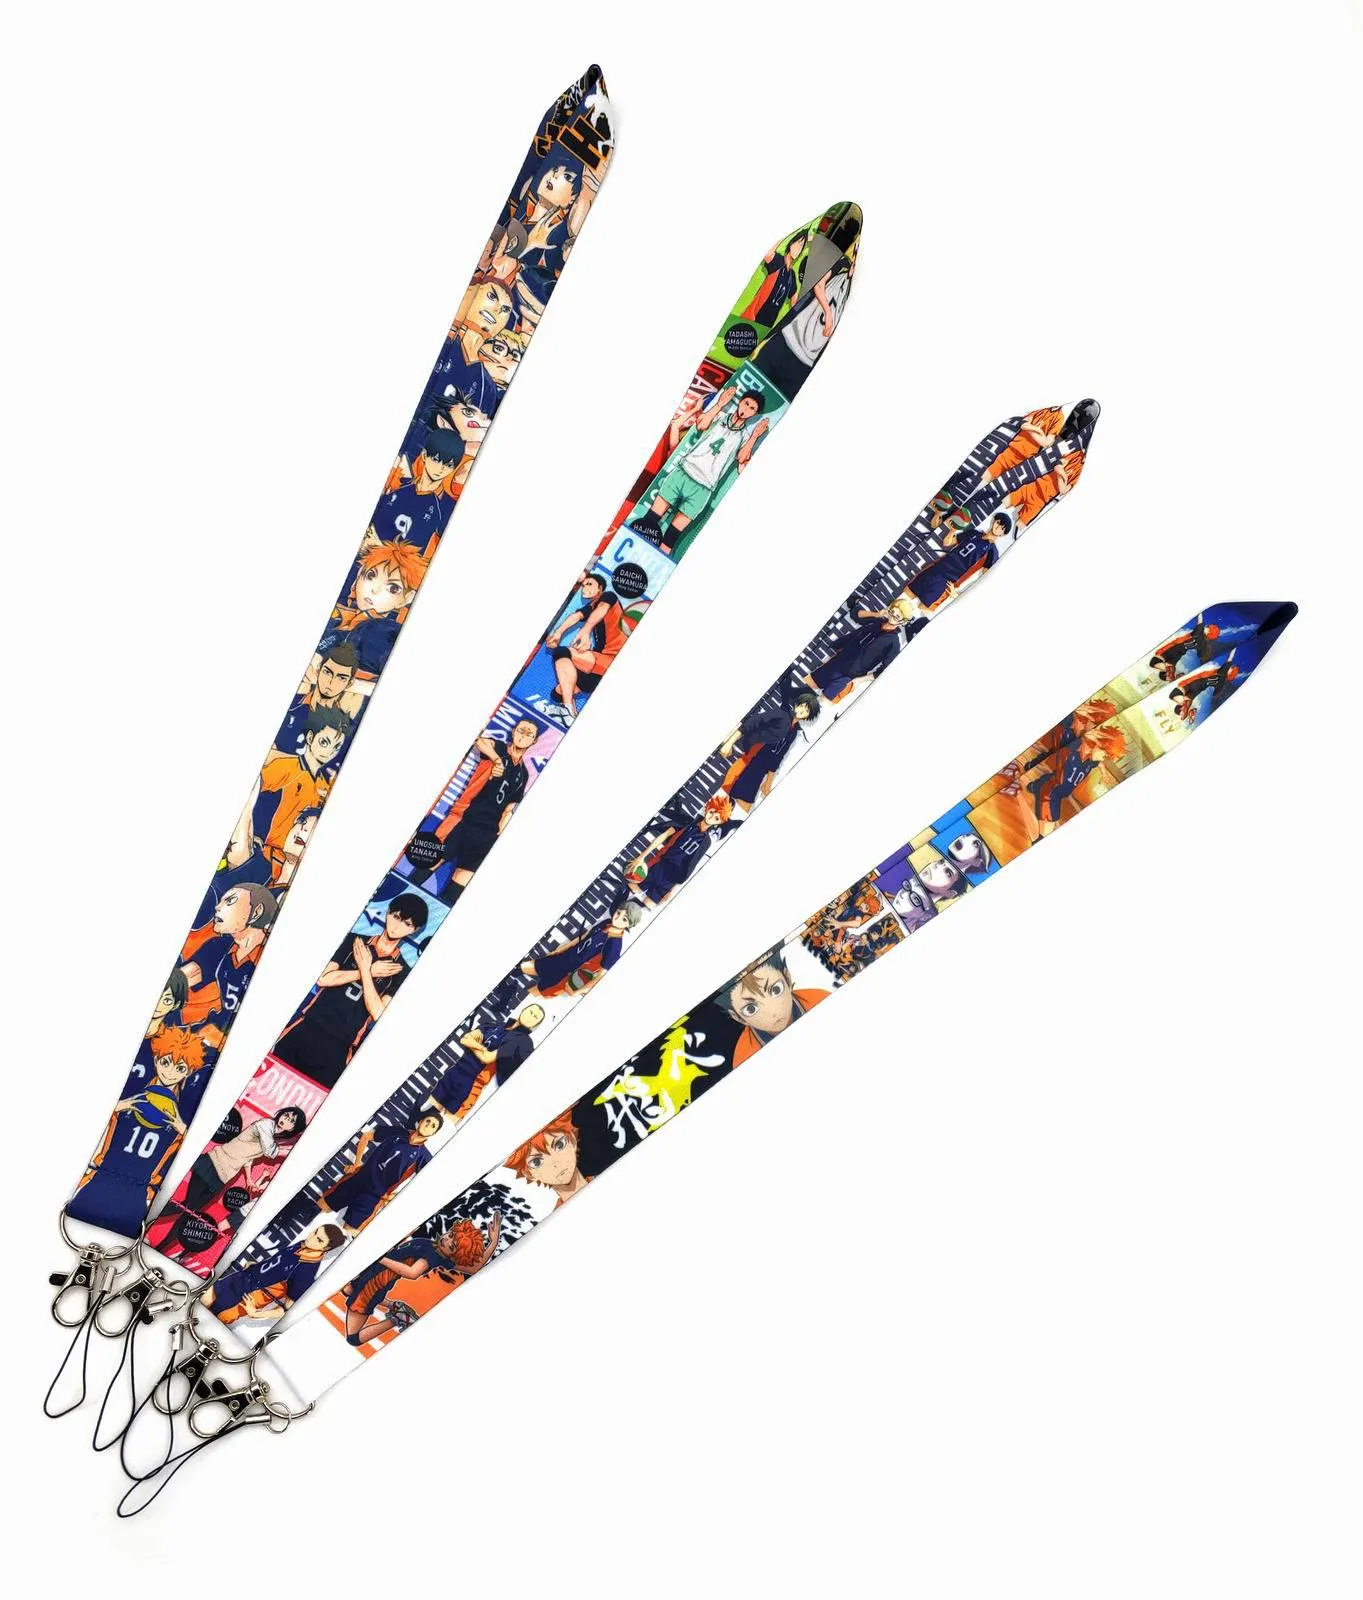 20 Stück Anime Volleyball Lanyard Schlüsselanhänger Lanyards für Schlüssel Abzeichen Ausweis Handy Seil Umhängebänder Zubehör Geschenke